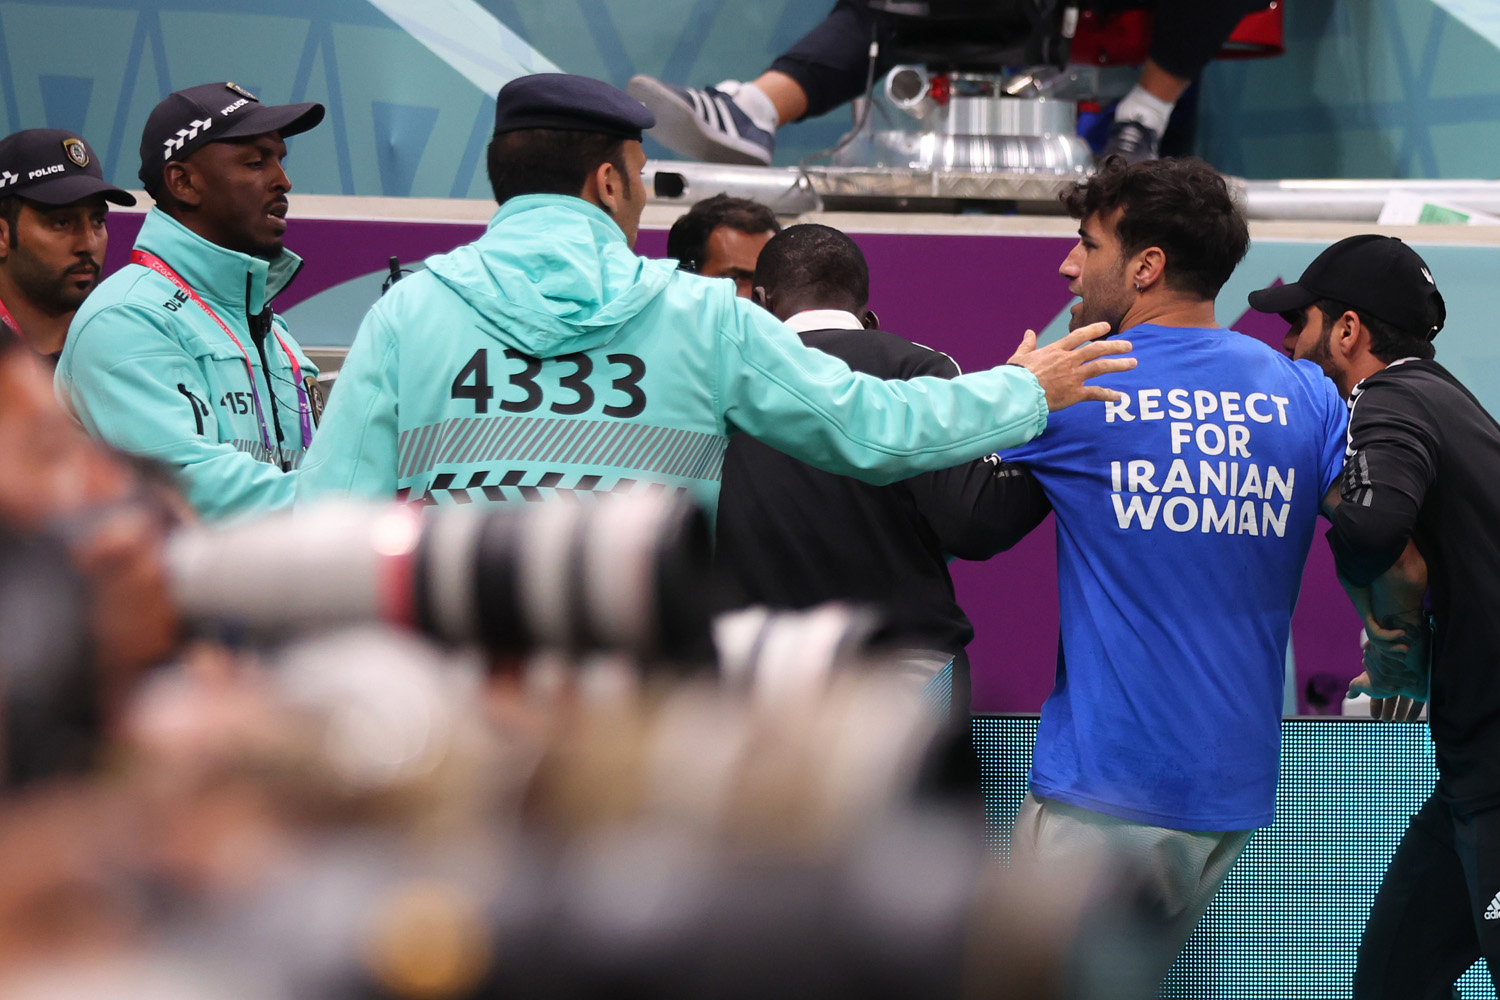 "Tisztelet az iráni nőknek" felirat a Portugália-Uruguay mérkőzést megzavaró férfi pólóján (Fotó: Marc Atkins/Getty Images)